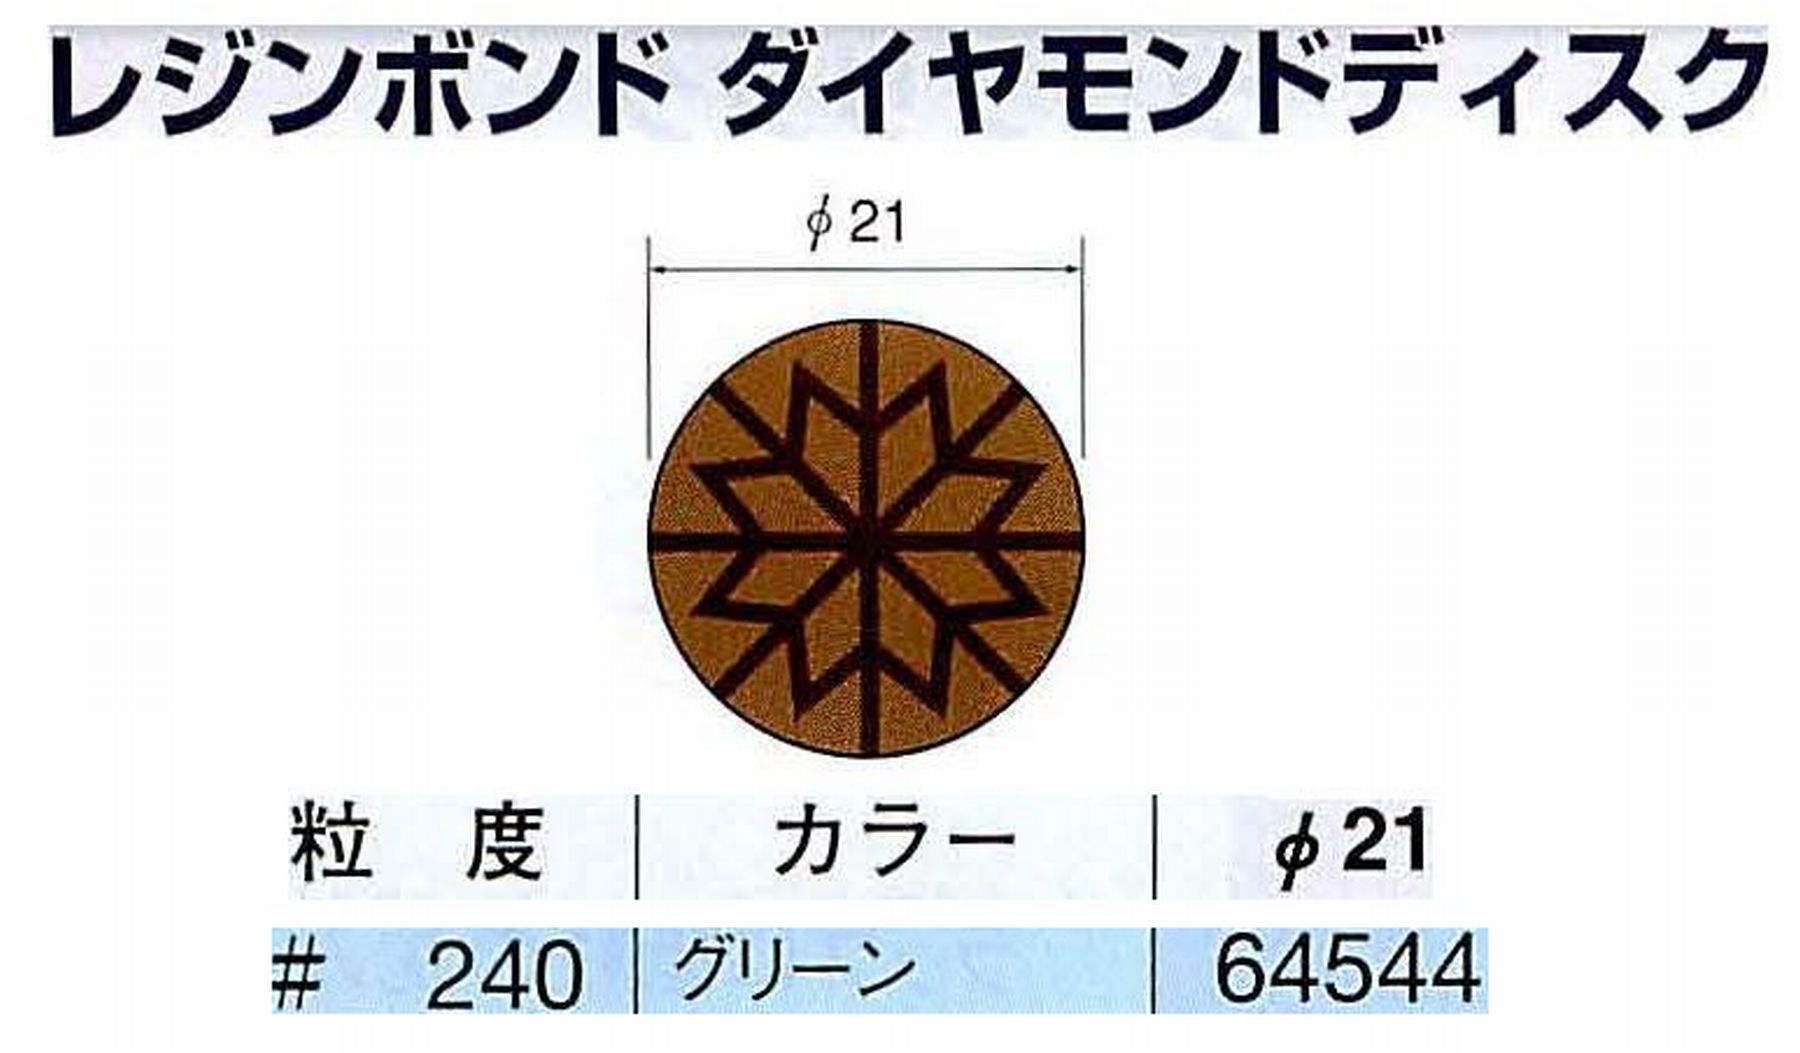 ナカニシ/NAKANISHI アングルグラインダ(電動・エアー) アングルアタッチメント専用工具 レジンボンド ダイヤモンドディスク(パターンタイプ) 64544